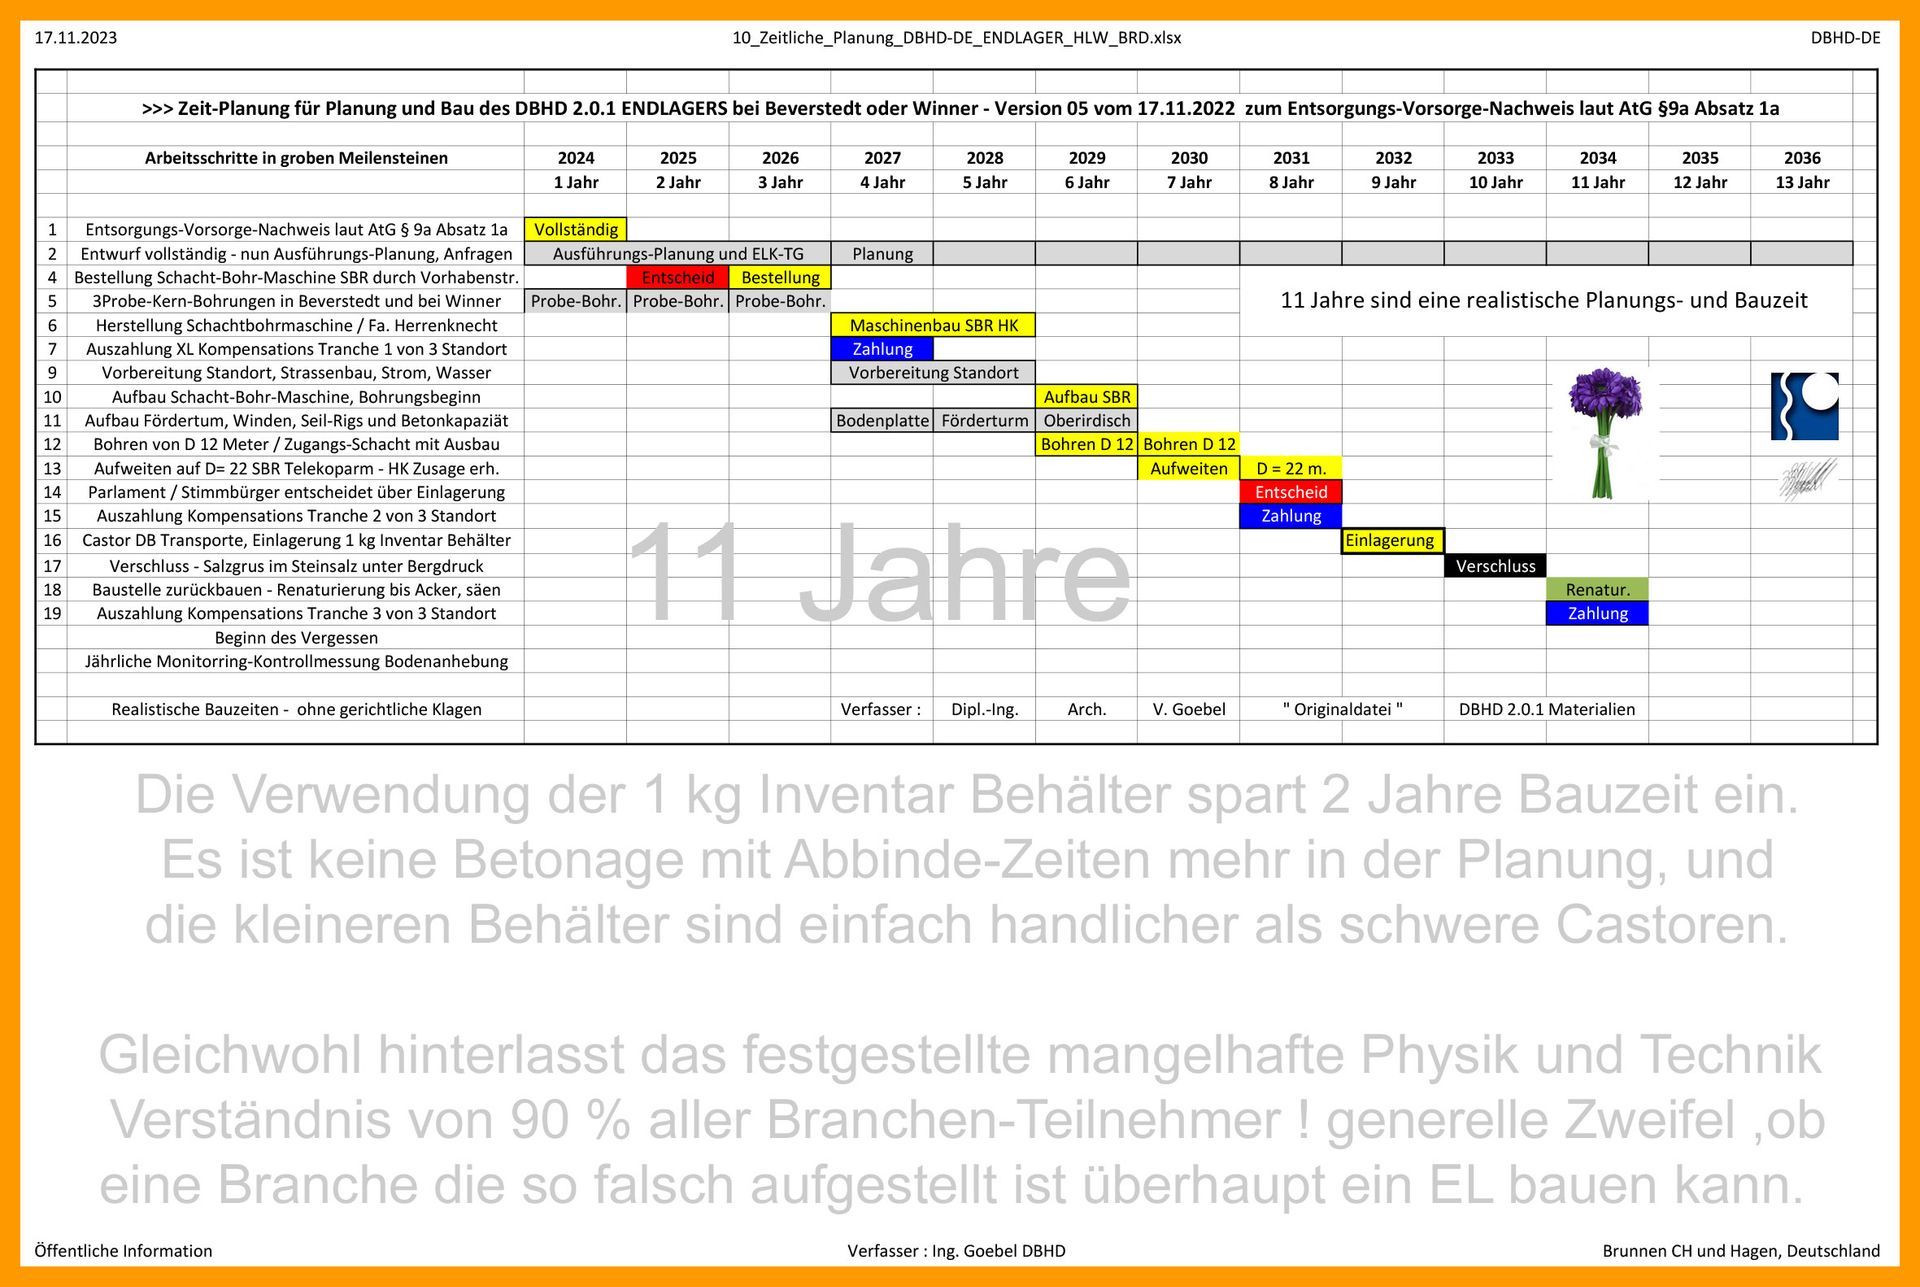 Planungs-und Bauzeit DBHD 2.0.1 Endlager bei Beverstedt - Entsorgungs-Vorsorge-Nachweis